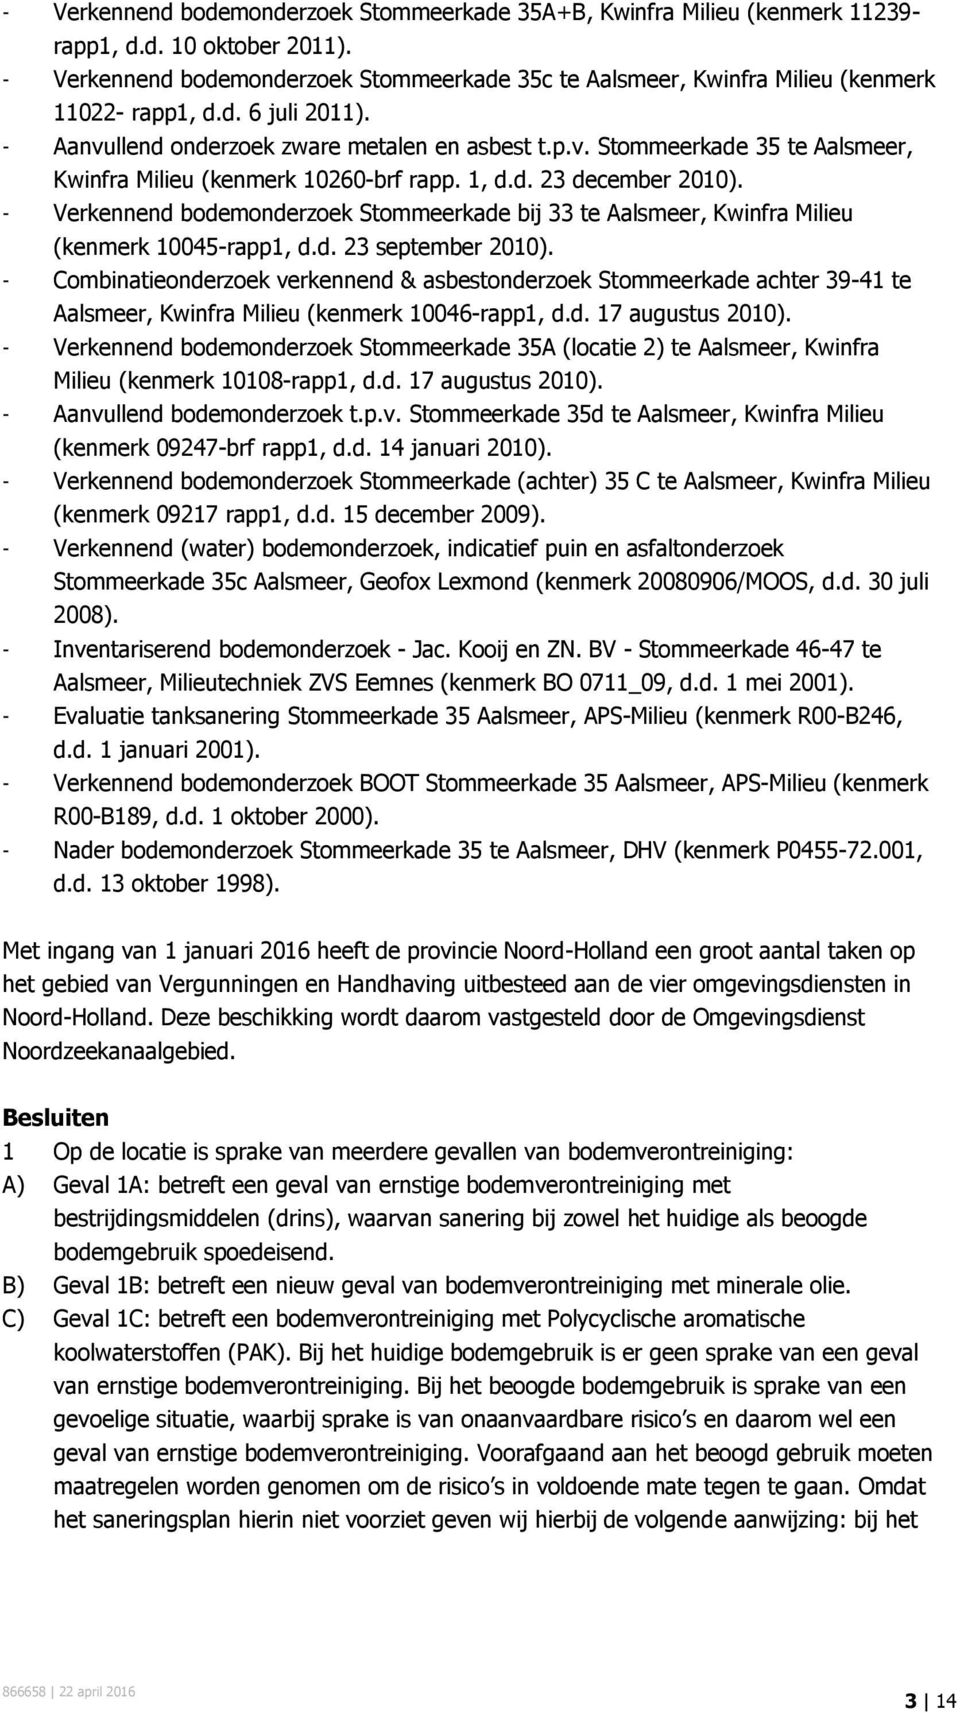 1, d.d. 23 december 2010). - Verkennend bodemonderzoek Stommeerkade bij 33 te Aalsmeer, Kwinfra Milieu (kenmerk 10045-rapp1, d.d. 23 september 2010).